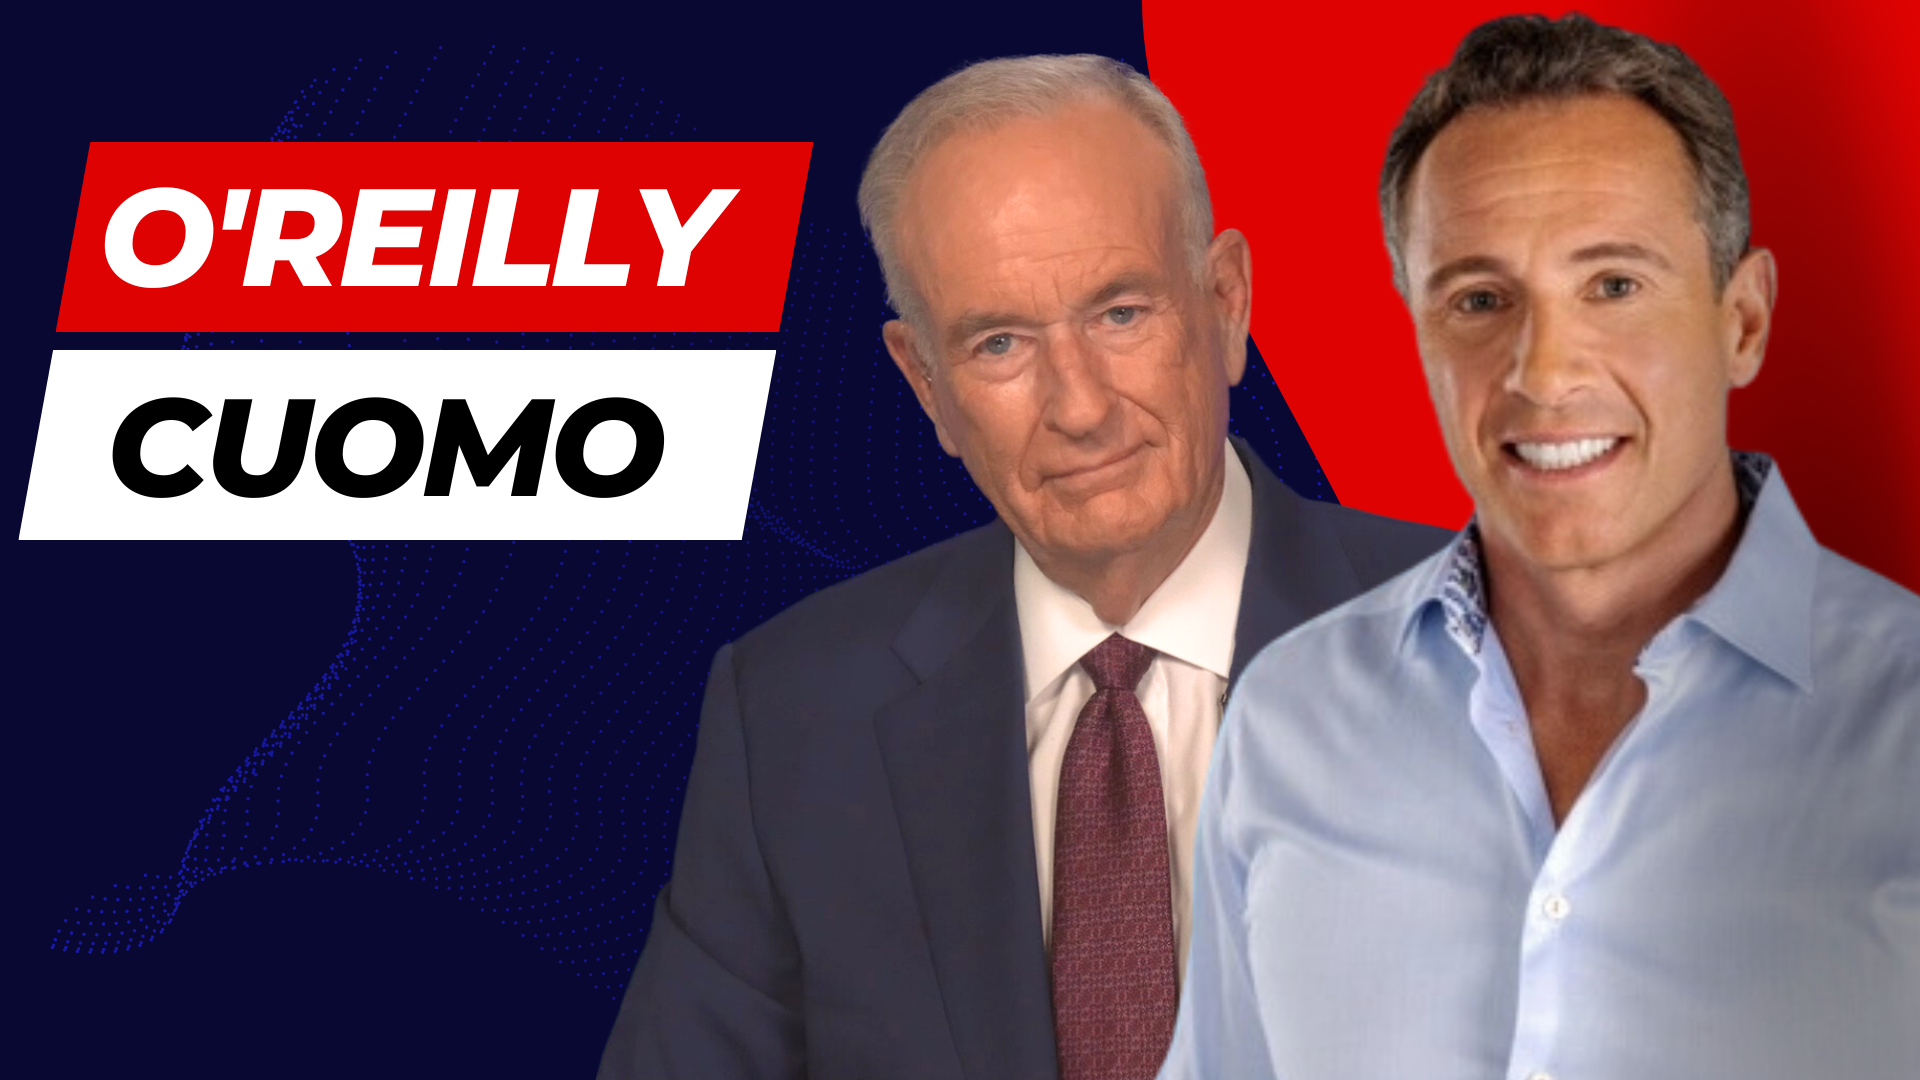 O'Reilly and Cuomo Address Fentanyl, Sentencing